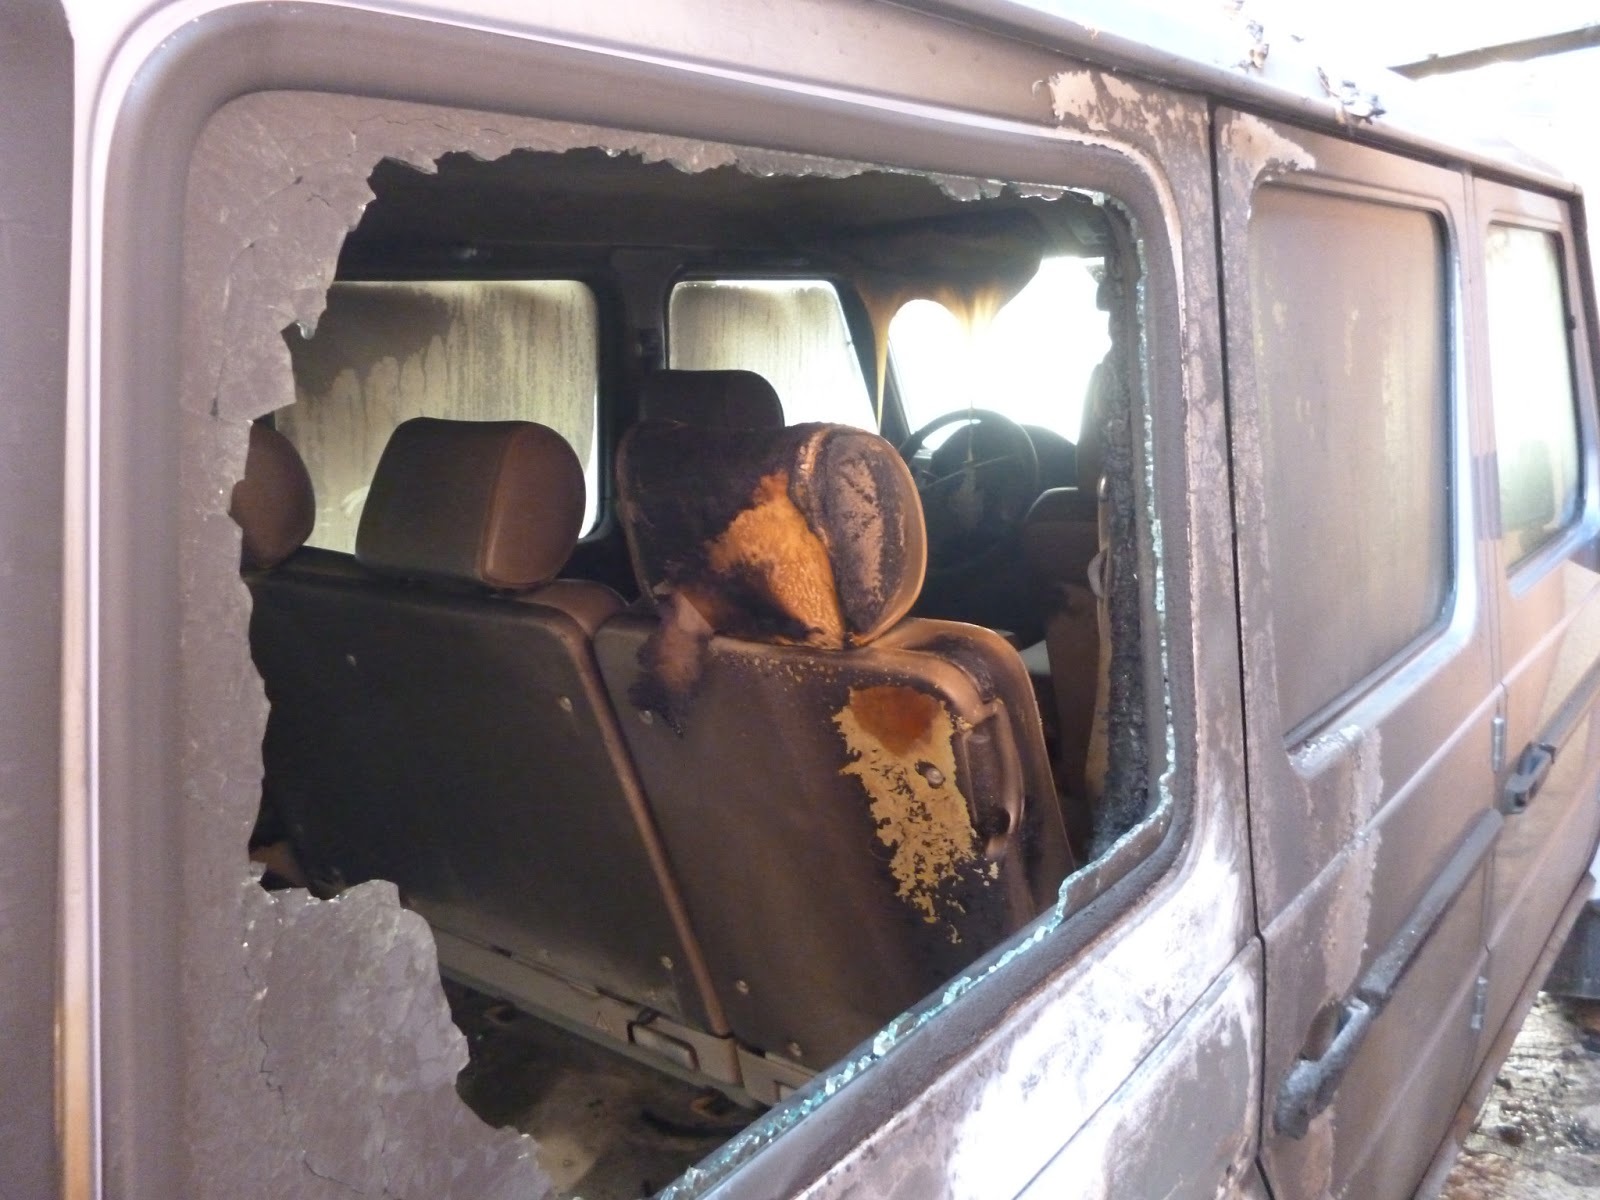 Ξάνθη: Πυρπόλησαν αυτοκίνητο του Υπουργείου Εξωτερικών (Φωτό και Video)